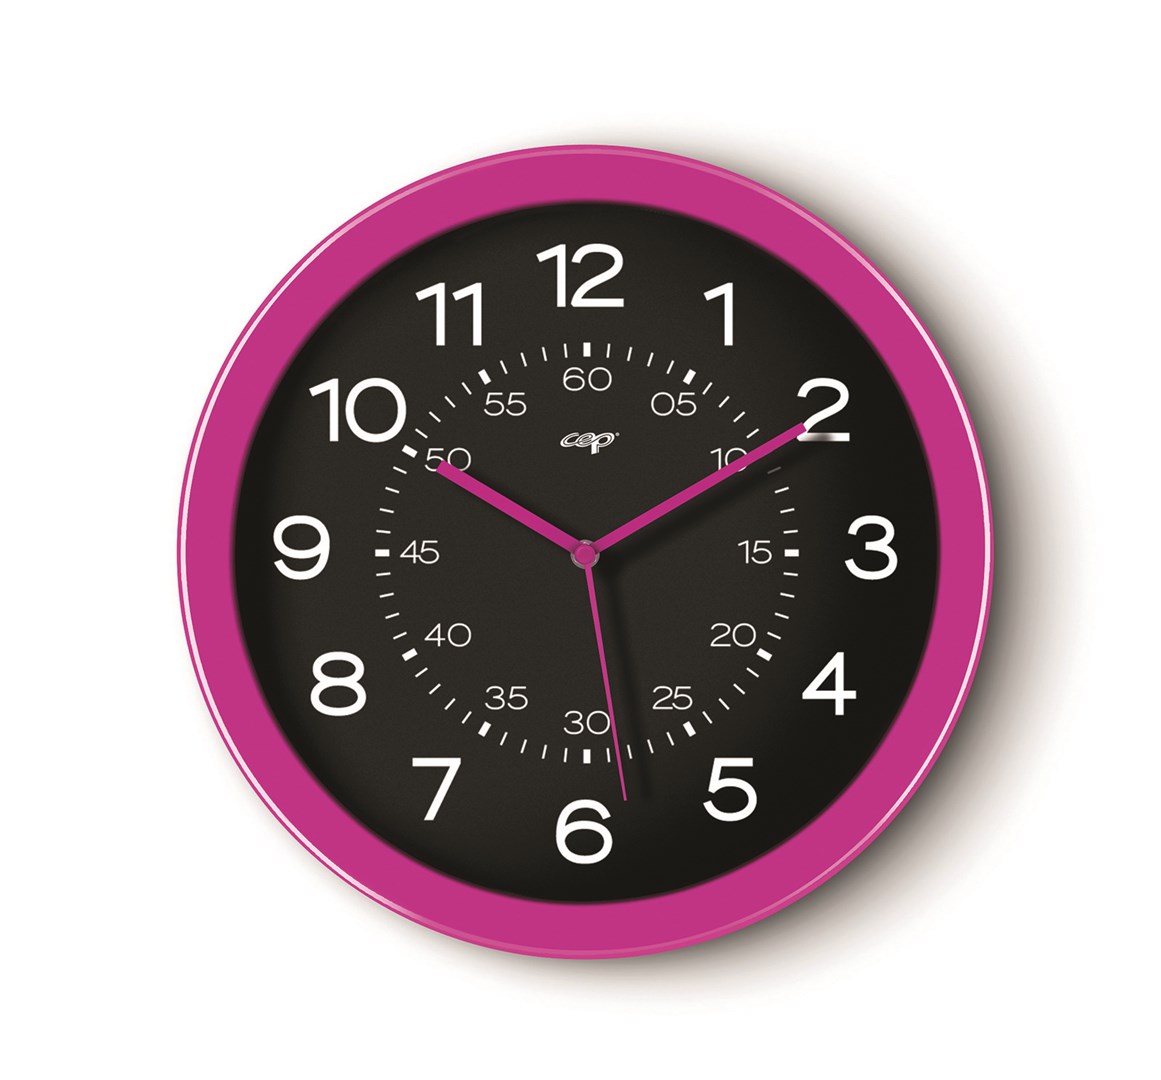 Zegar ścienny CEP Pro Gloss, 30cm, różowy